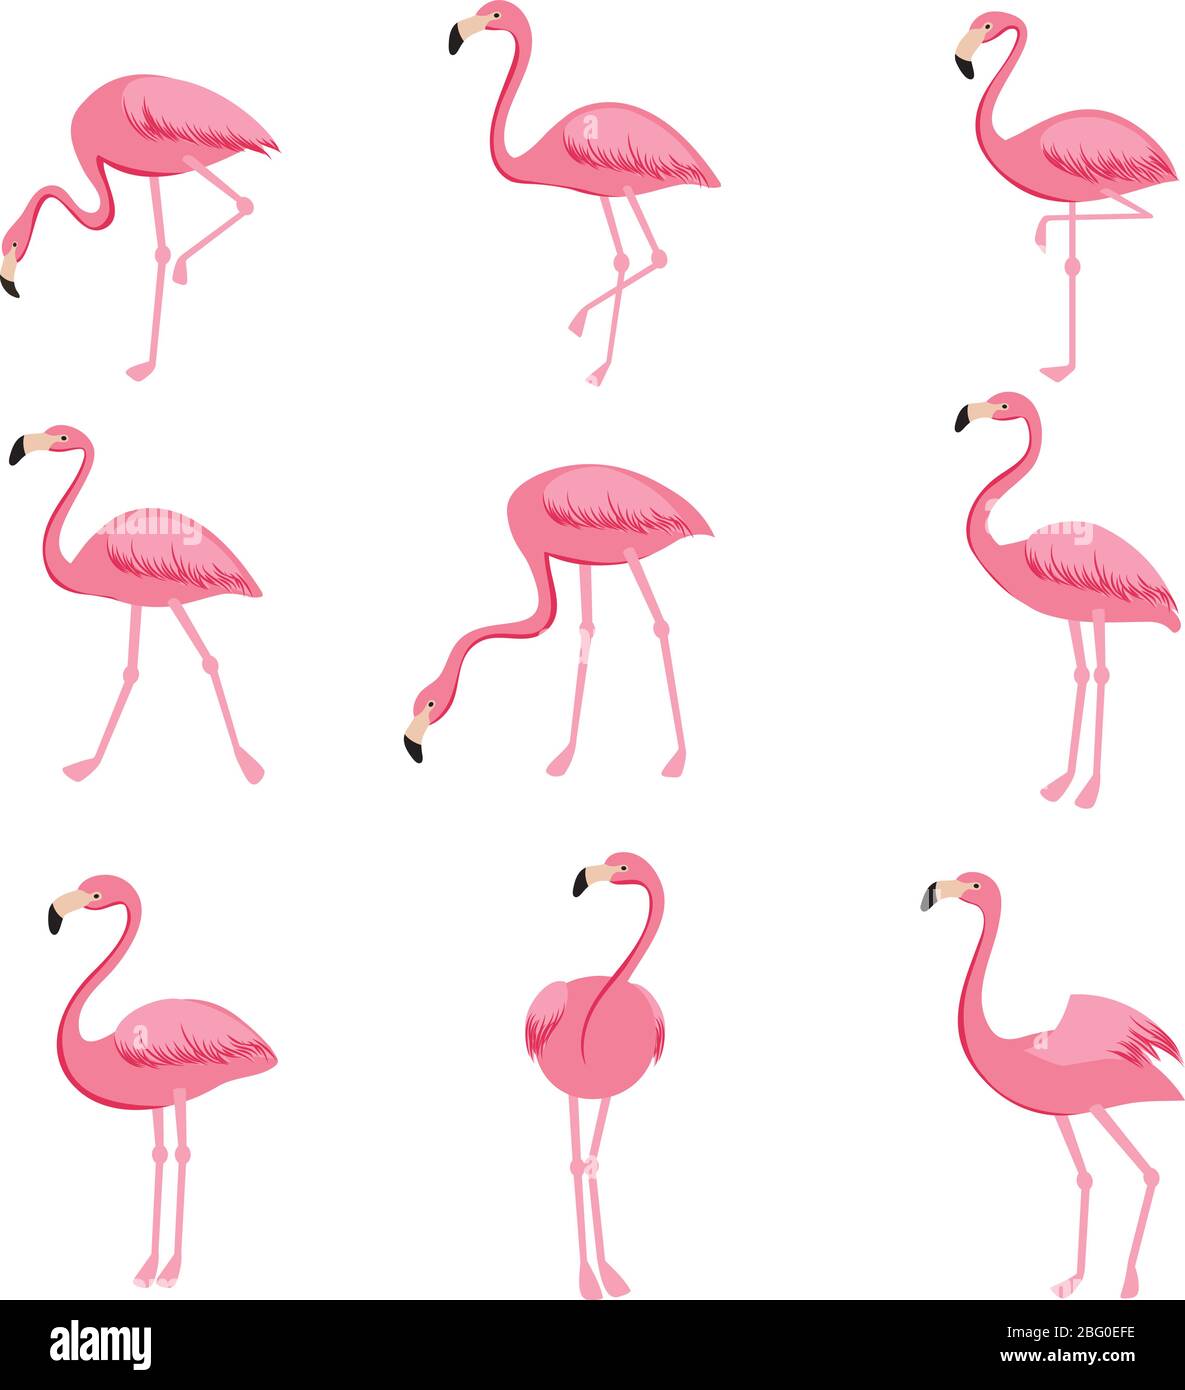 Juego de vectores de flamenco rosa de dibujos animados. Bonita colección de flamencos. Flamingo animal exótico, naturaleza fauna silvestre ilustración Ilustración del Vector